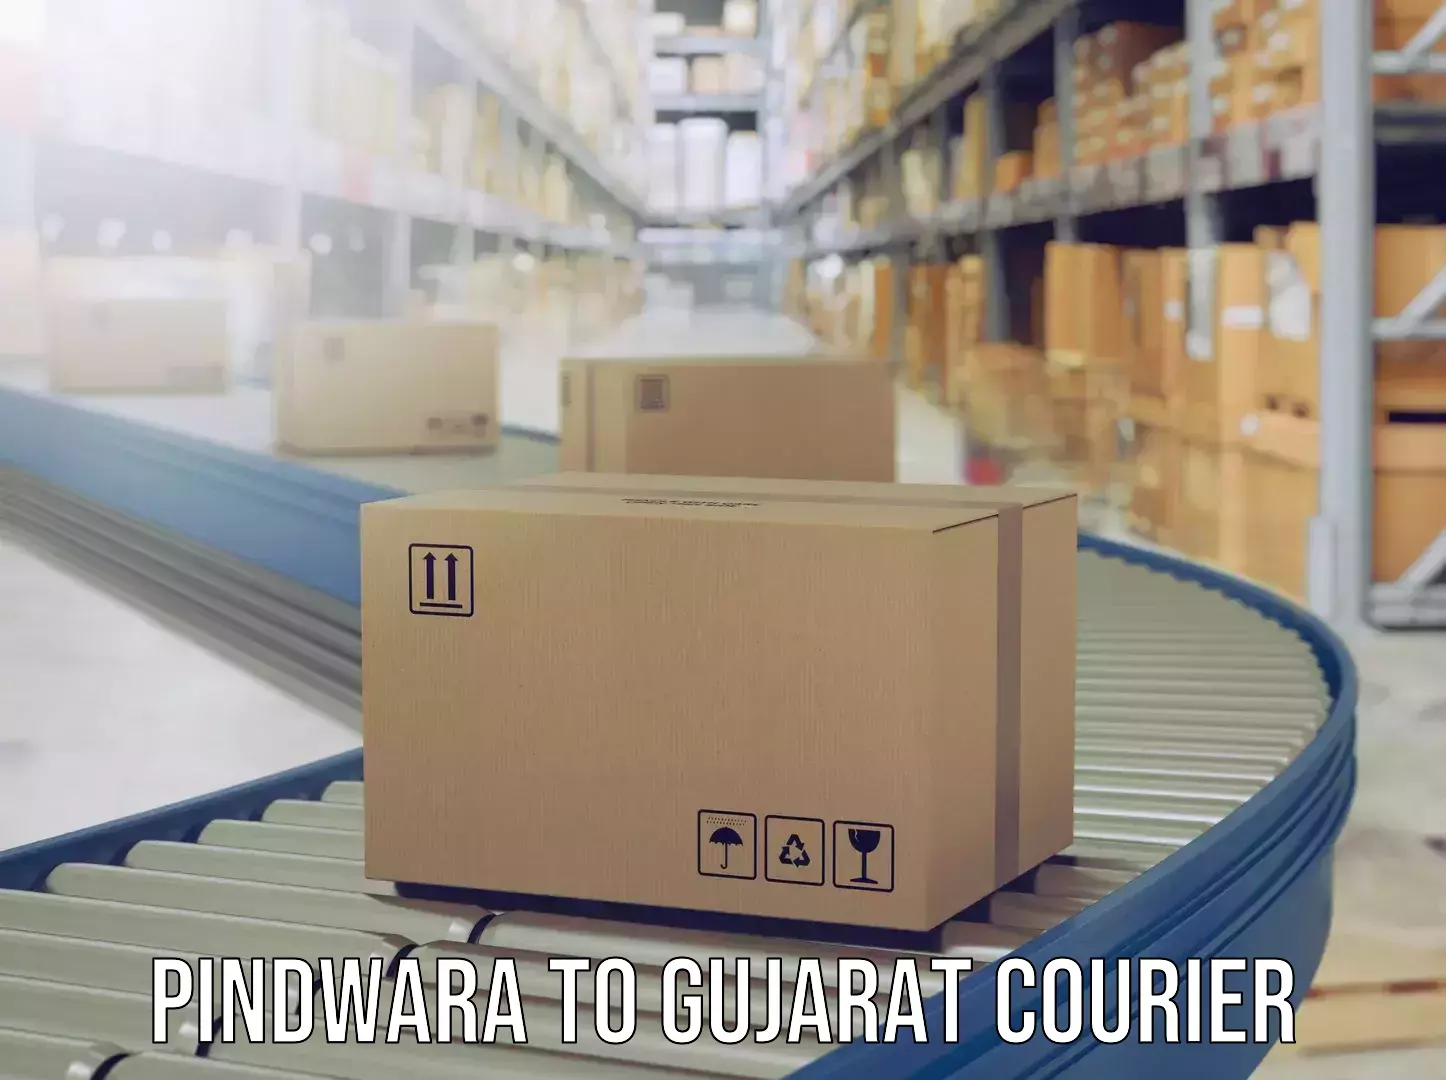 Urgent luggage shipment Pindwara to Gujarat